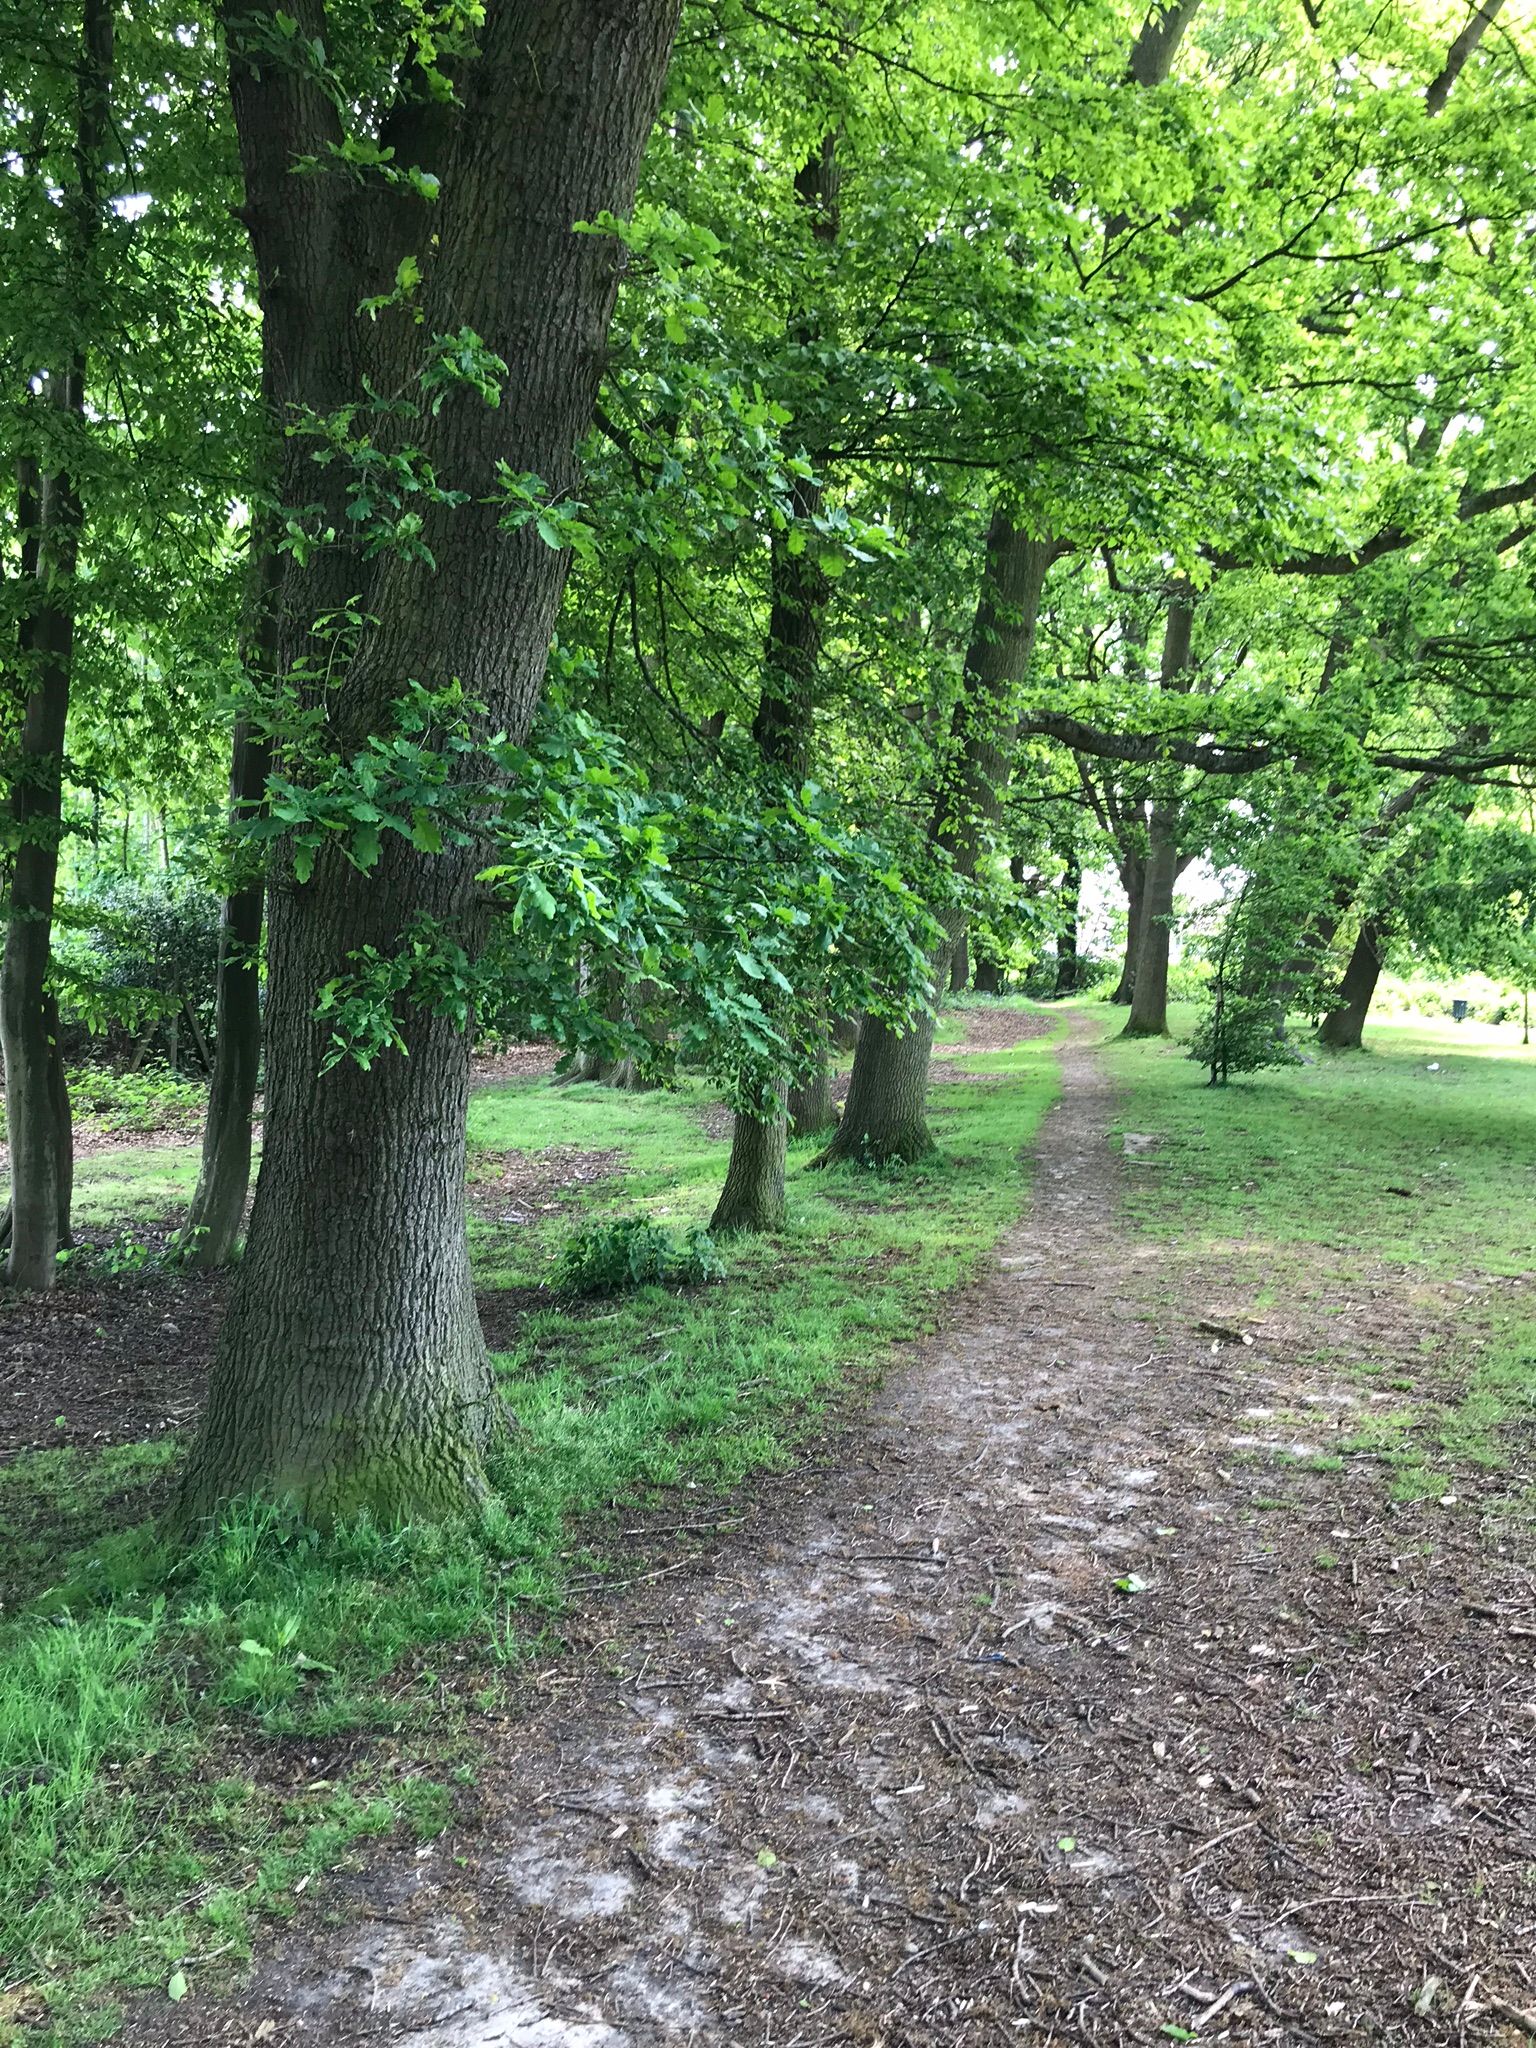 Leafy walkways around the park